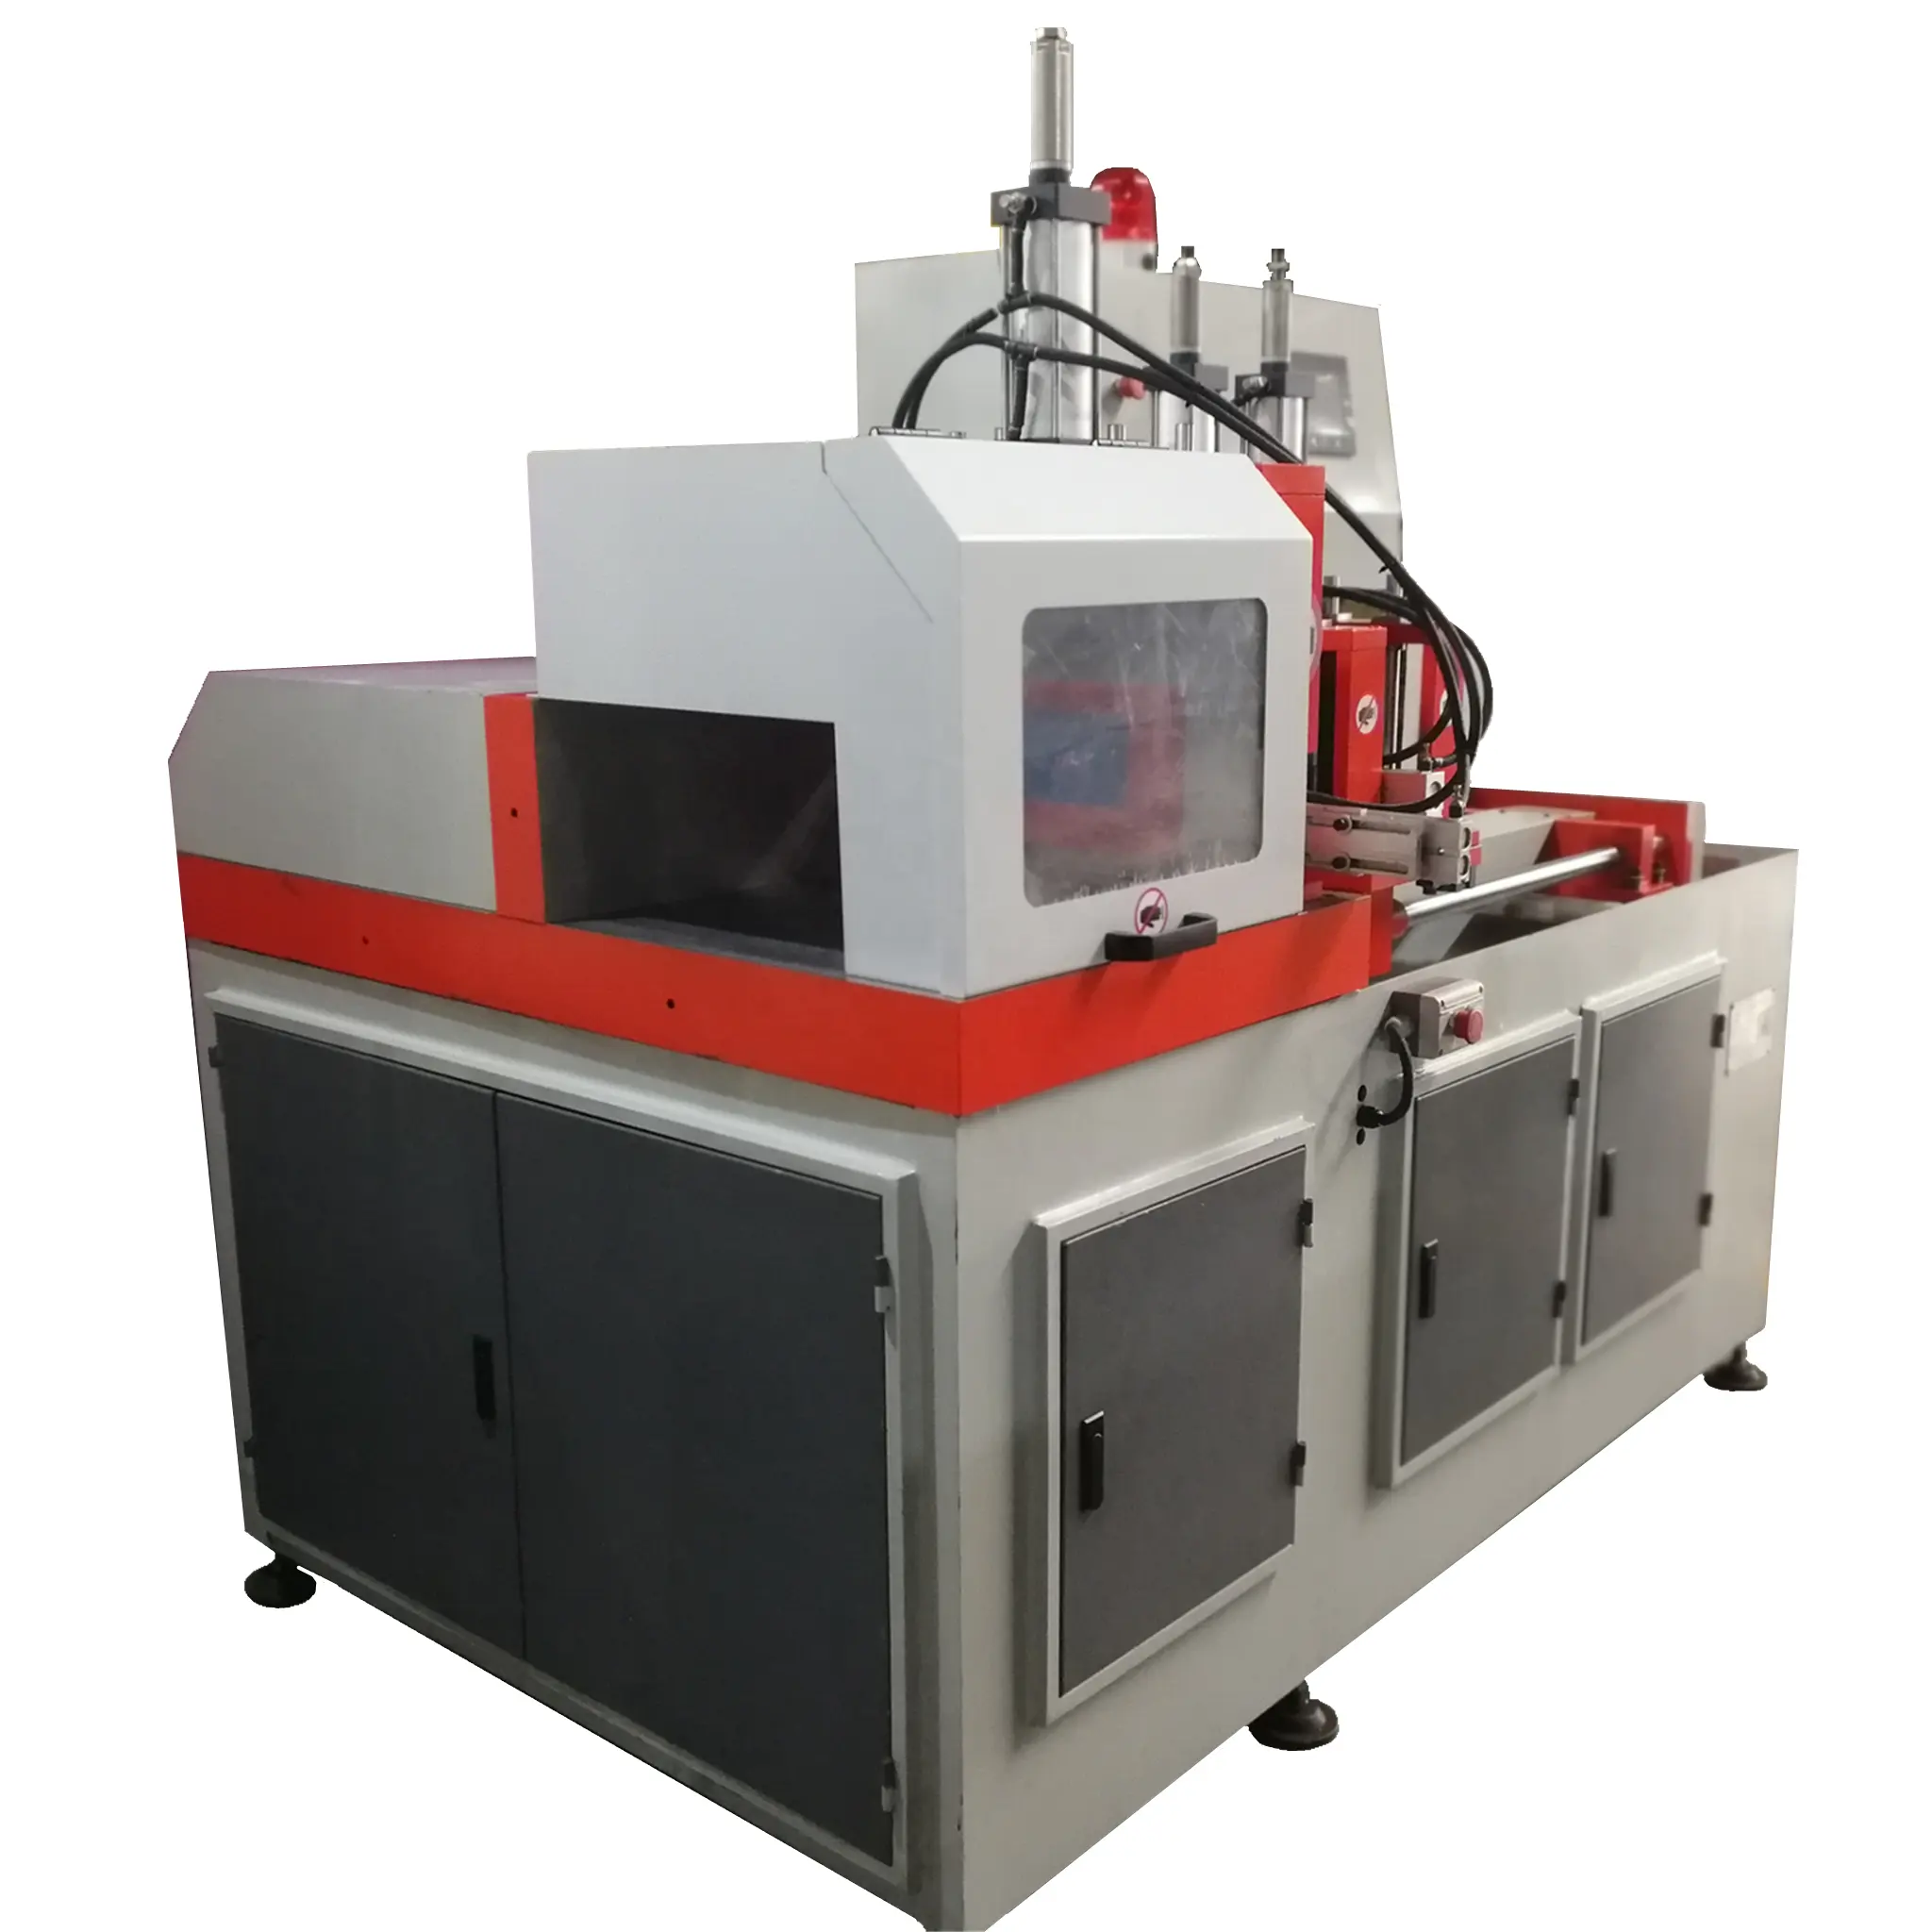 JR-505 CNC Fully Automatic Pipe Cutting Machine Profile Cutter